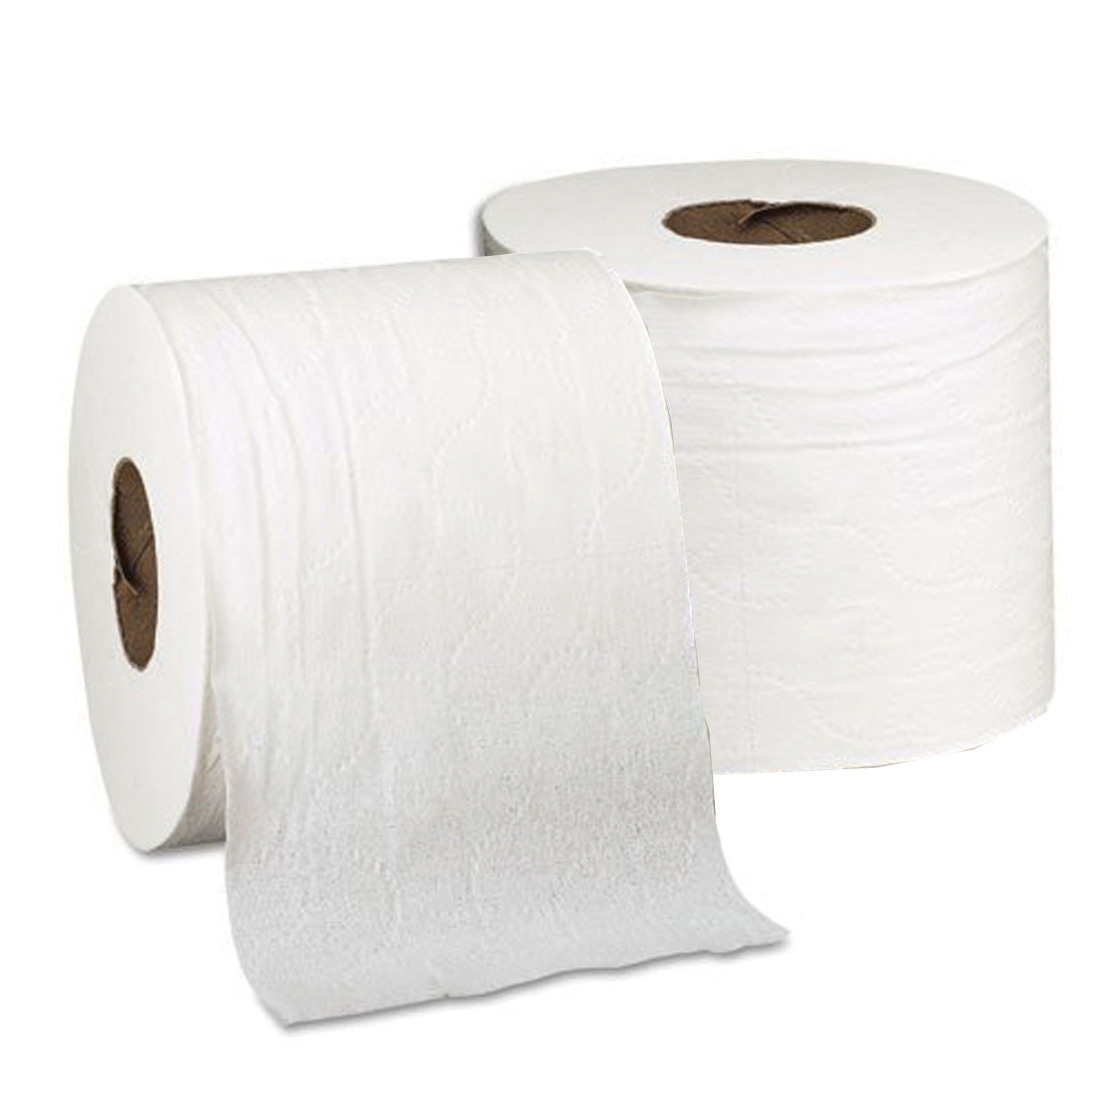 Cottonelle Toilet Tissue 60 Rolls/Case